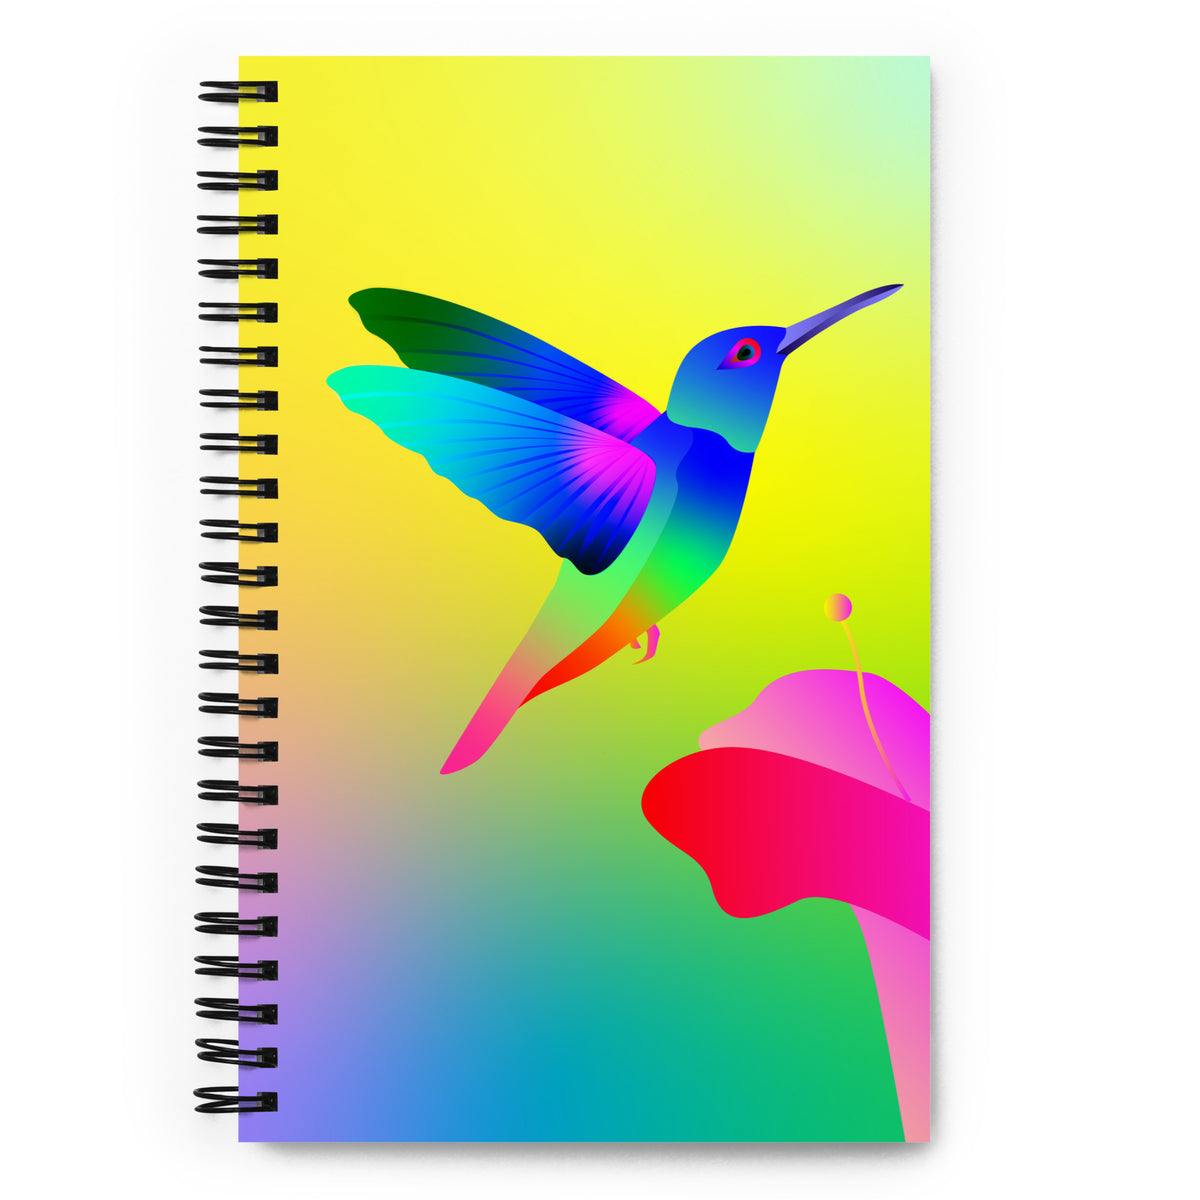 Hummingbird Journal